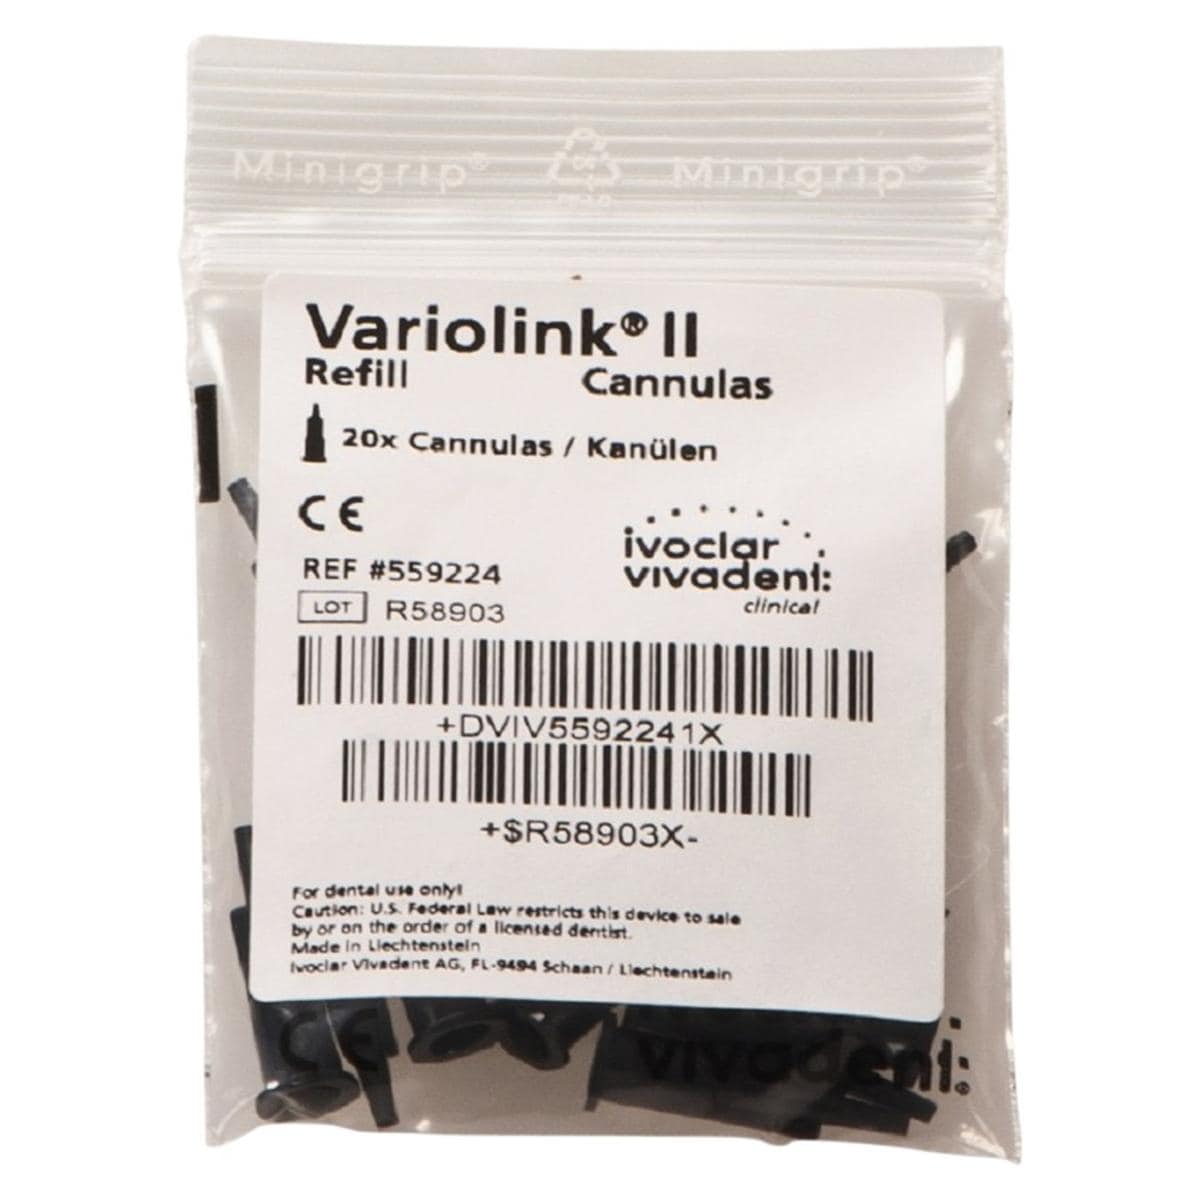 Variolink II applicatietips - Verpakking, 20 stuks